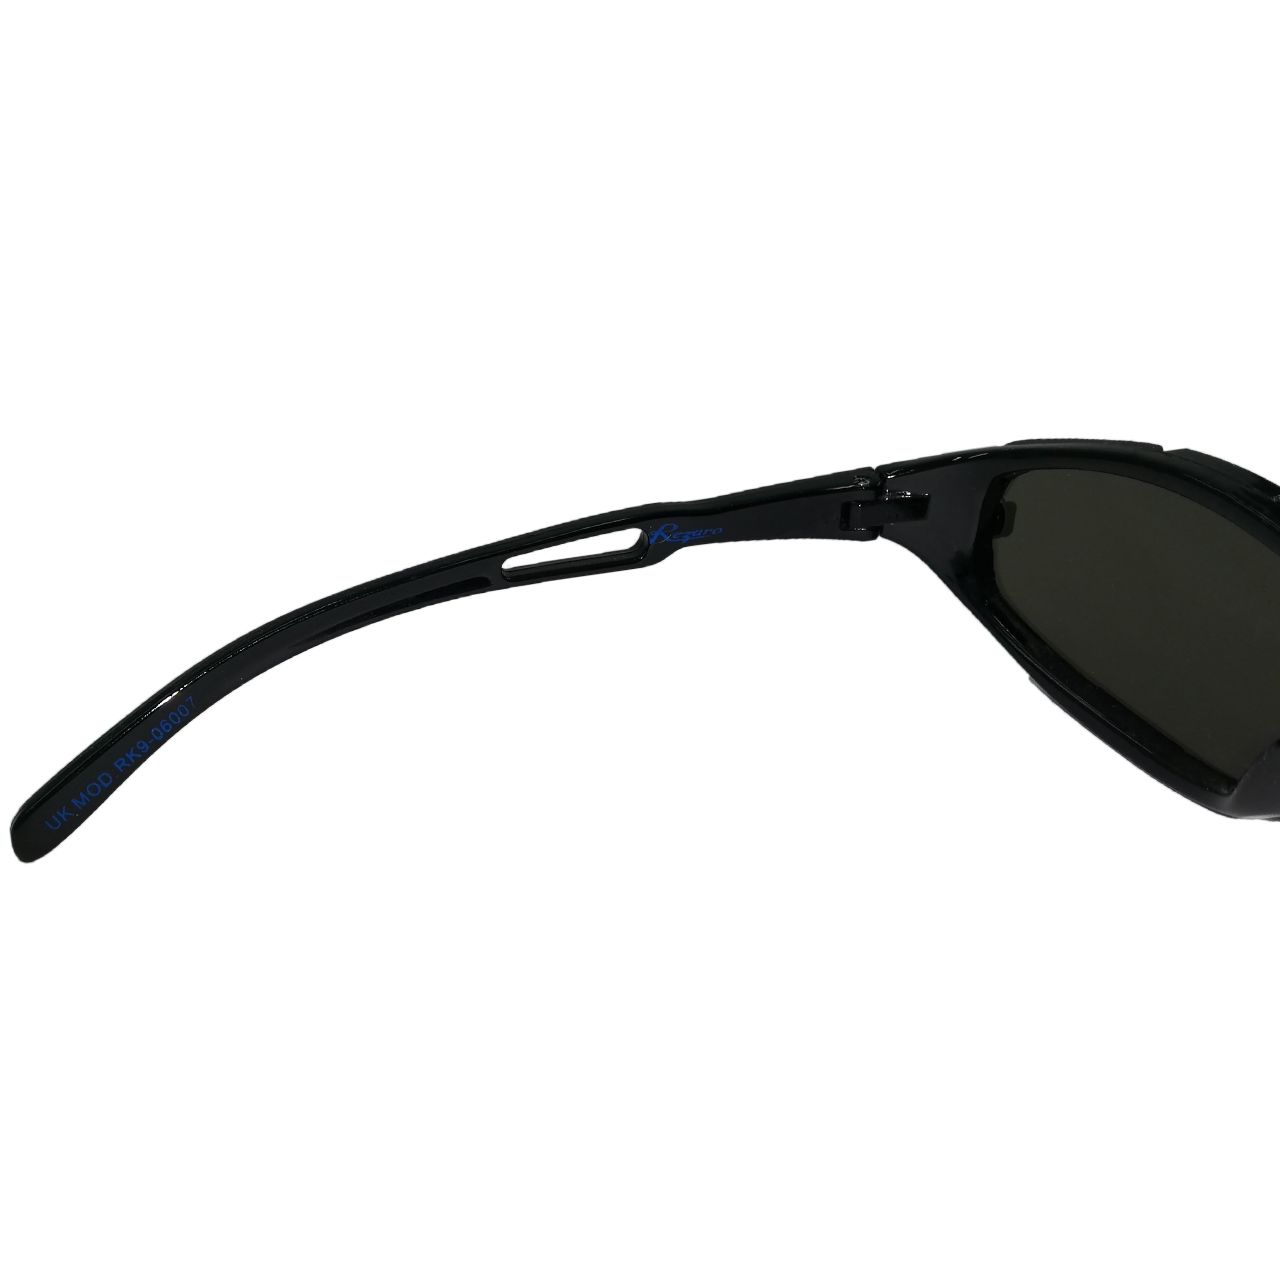  عینک آفتابی بچگانه ریزارو کد G6007 -  - 4